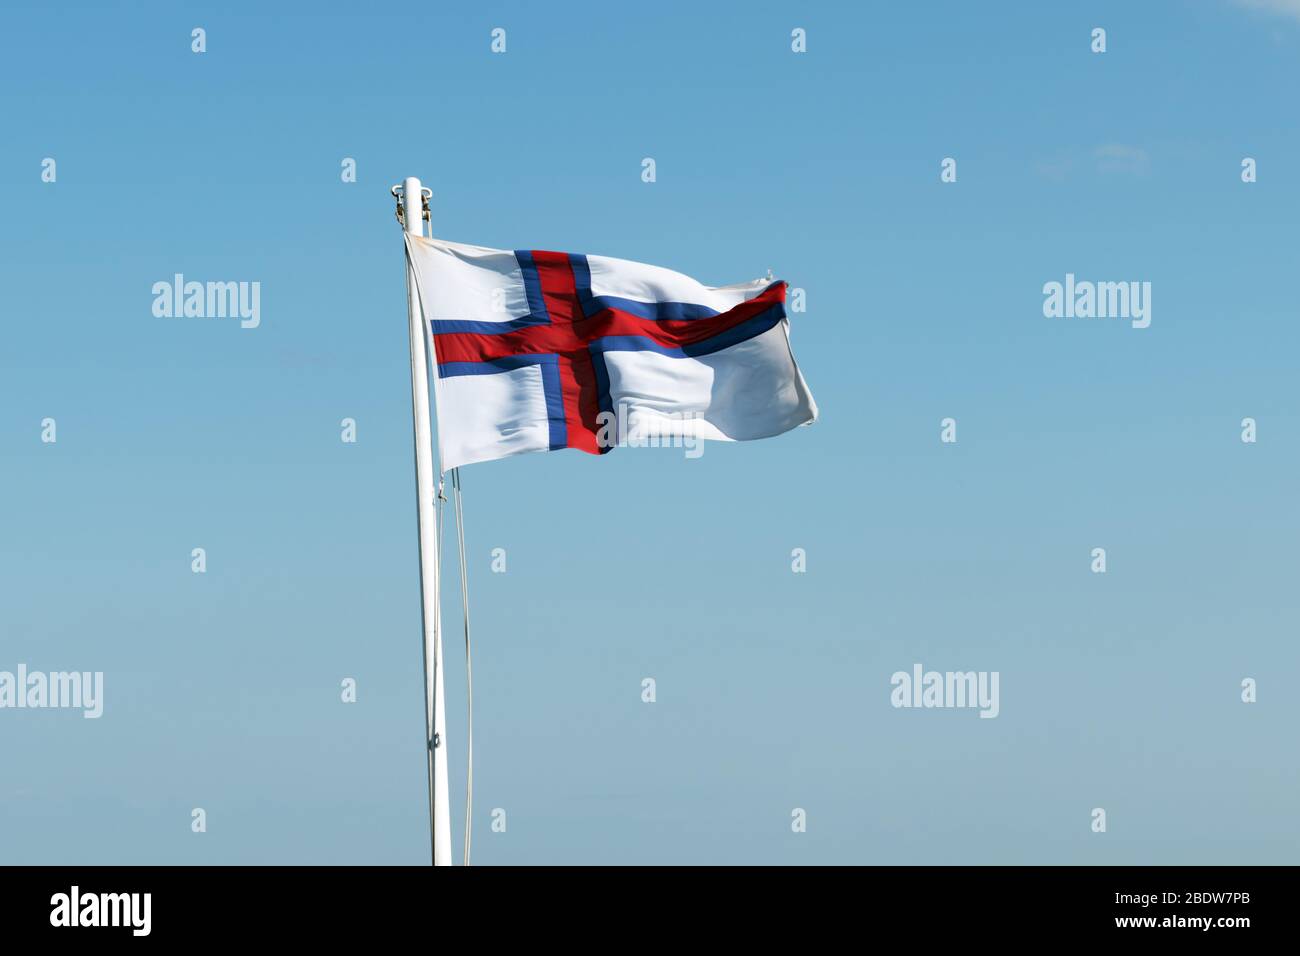 Bandera de las islas Feroe que ondean contra un cielo azul claro Foto de stock